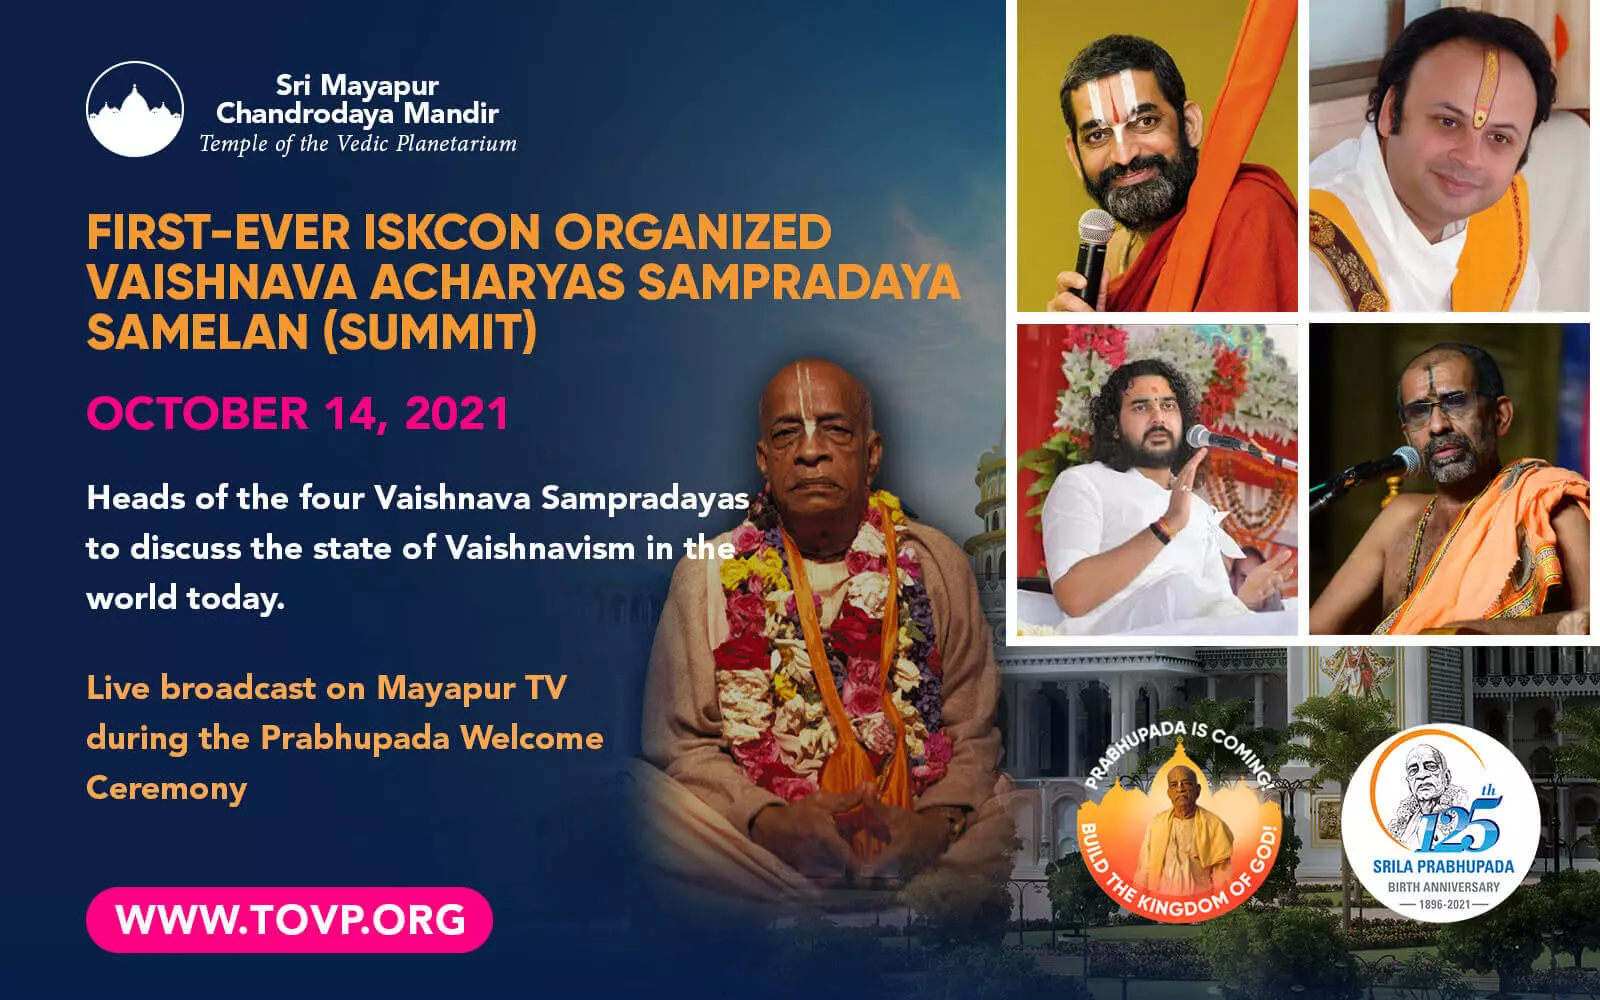 Erste von der ISKCON organisierte Vaishnava Acharyas Sampradaya Samelan (Gipfel) - 14. Oktober 2021